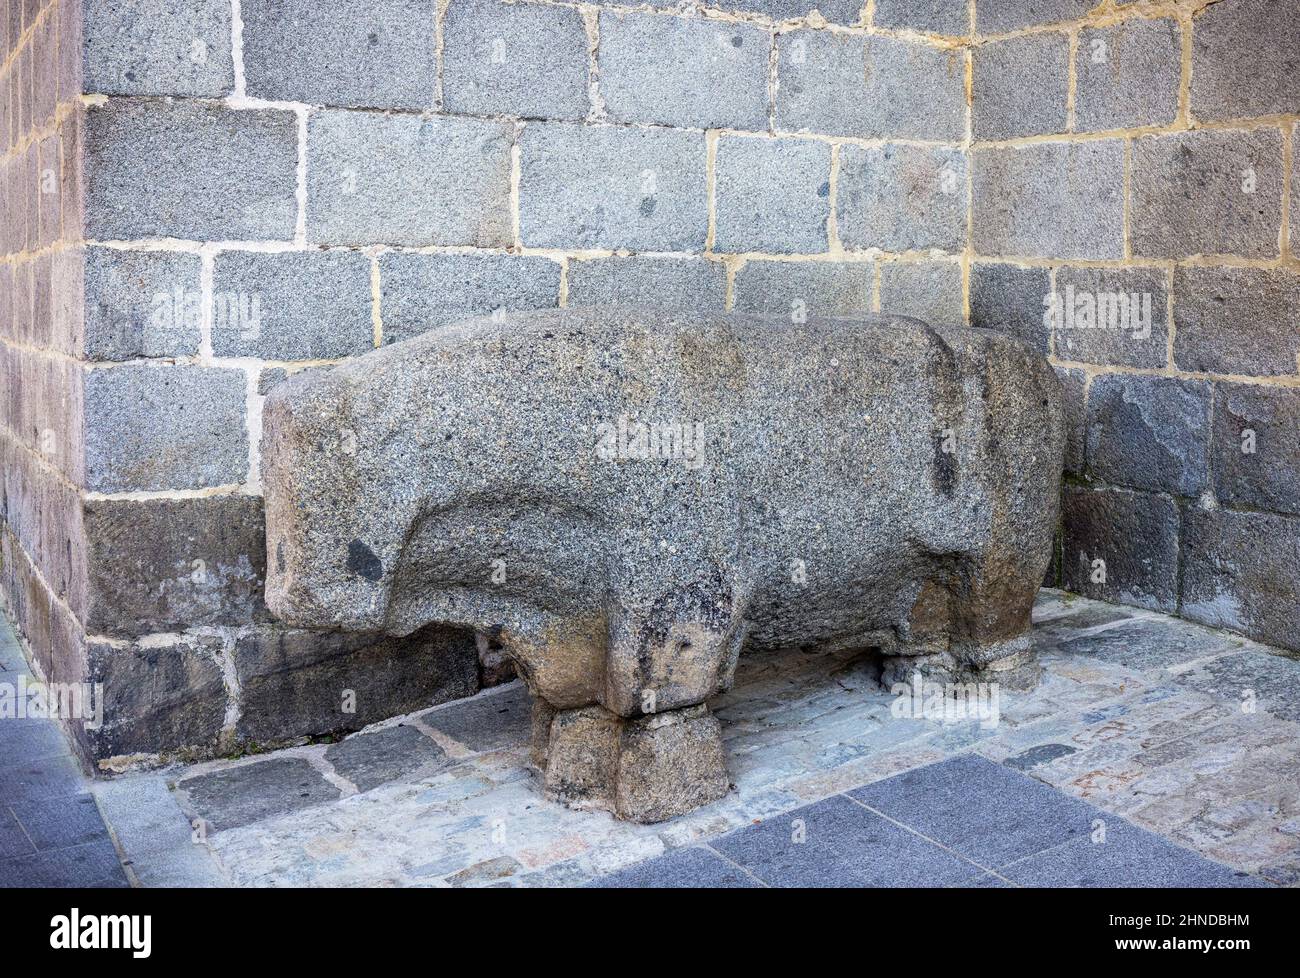 Un taureau en pierre connu sous le nom de verraco. De nombreux verracos ont été trouvés et sont conservés dans le centre de l'Espagne. Ils datent d'environ 4th au 1st centu Banque D'Images